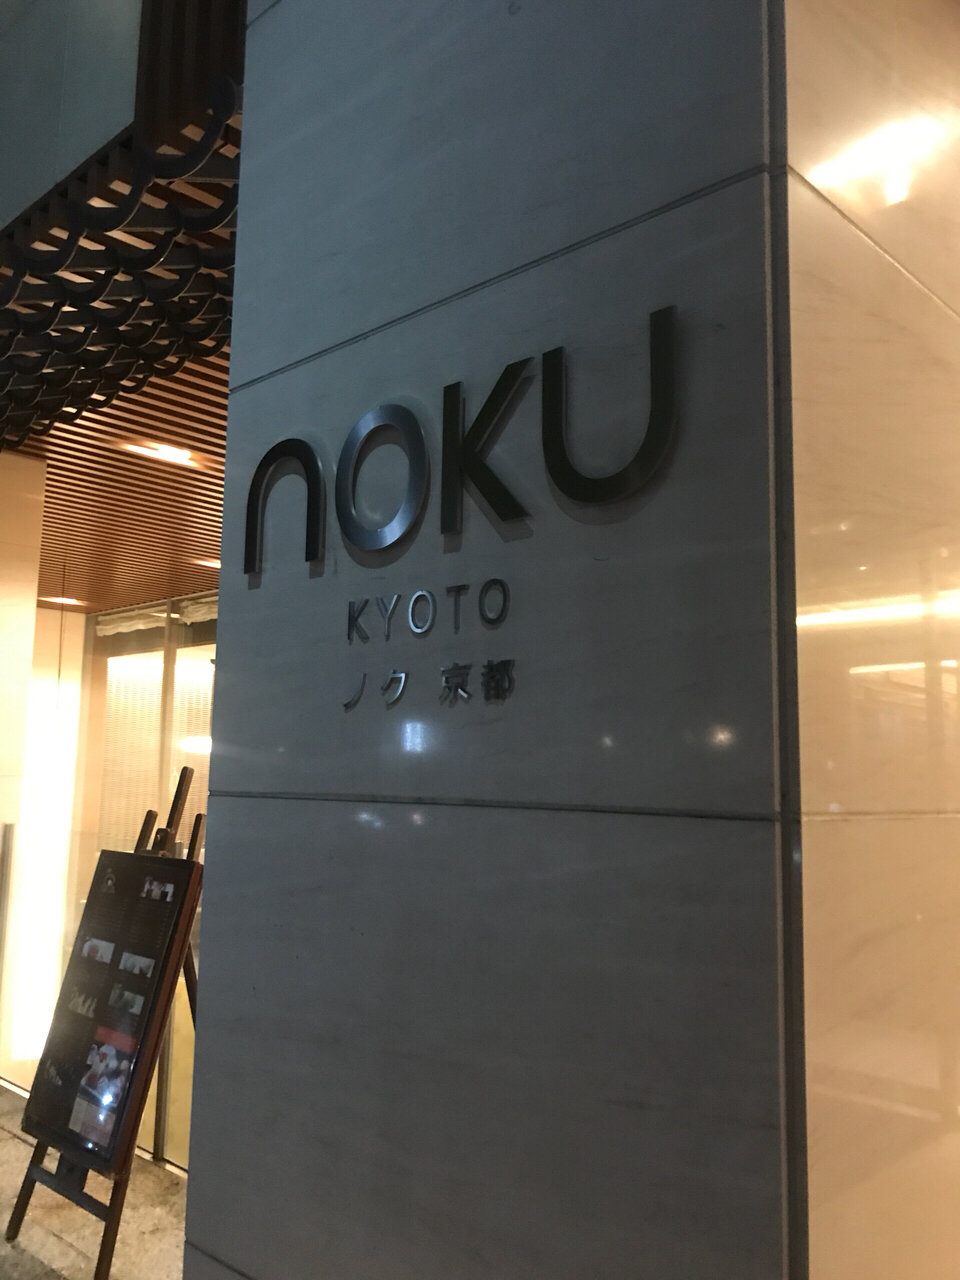 京都酒店—Noku Kyoto入住心得